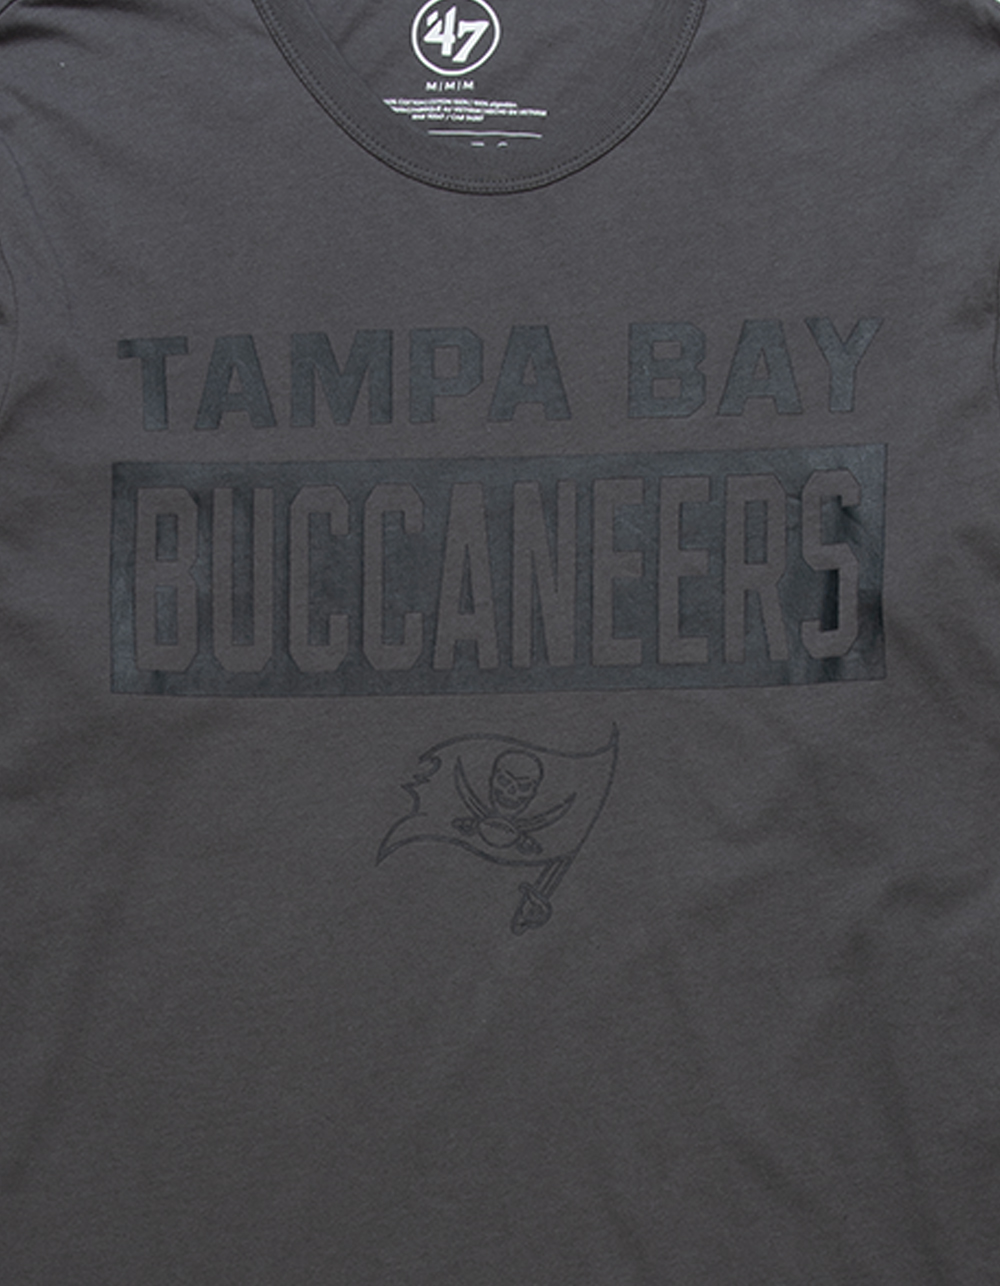 47 Brand Tampa Bay Buccaneers Long Sleeve Tee - Dark Grey - Medium